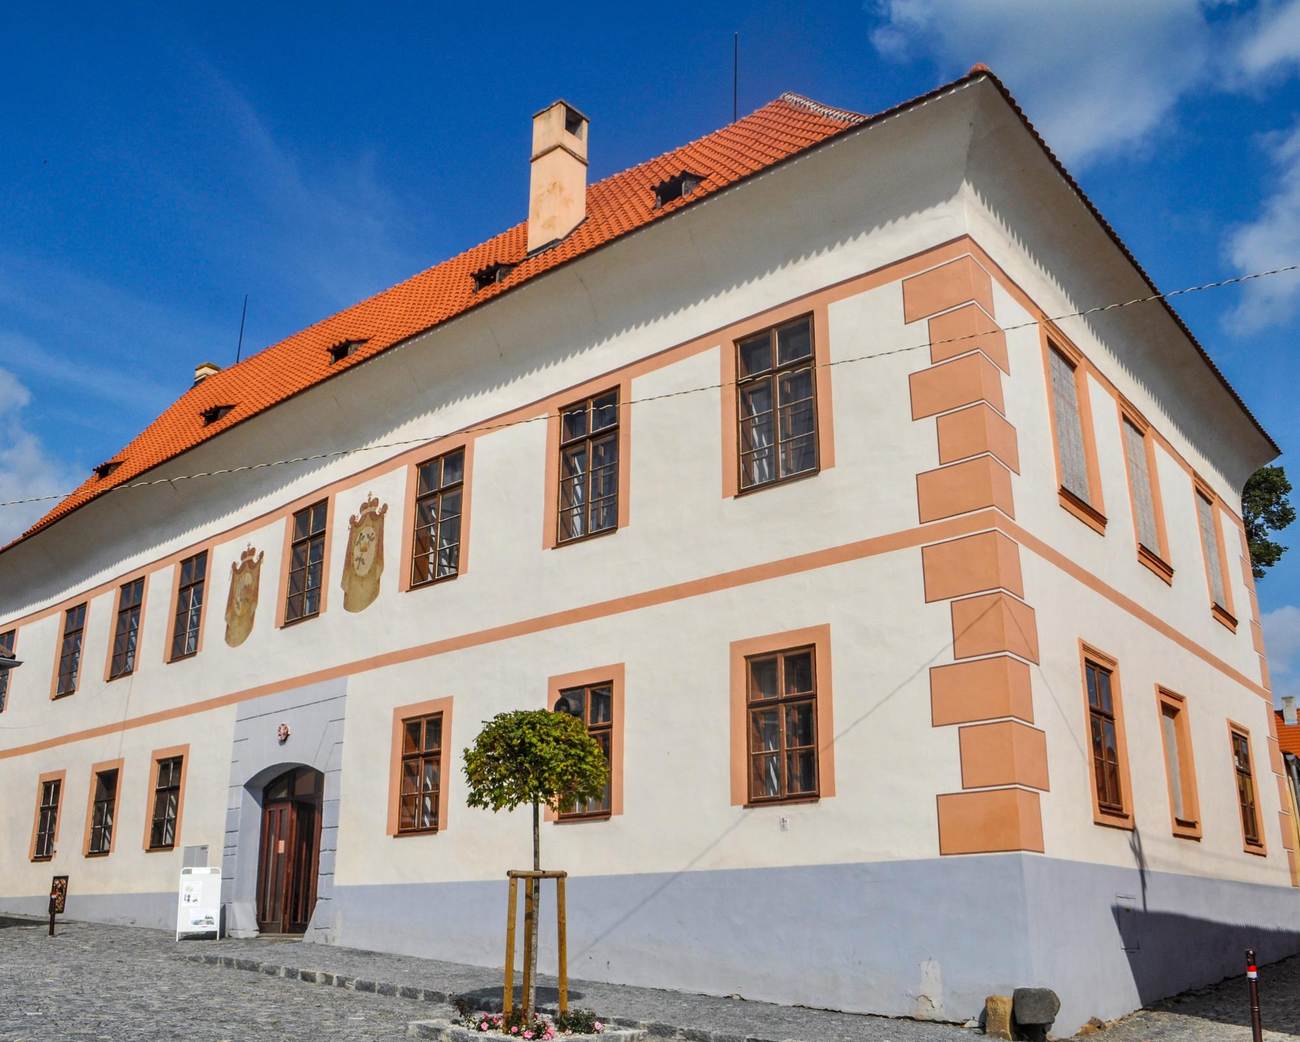 Muzeum v Panském domě Bavorov: Objevte historii Bavorova i jeho slavné rodáky